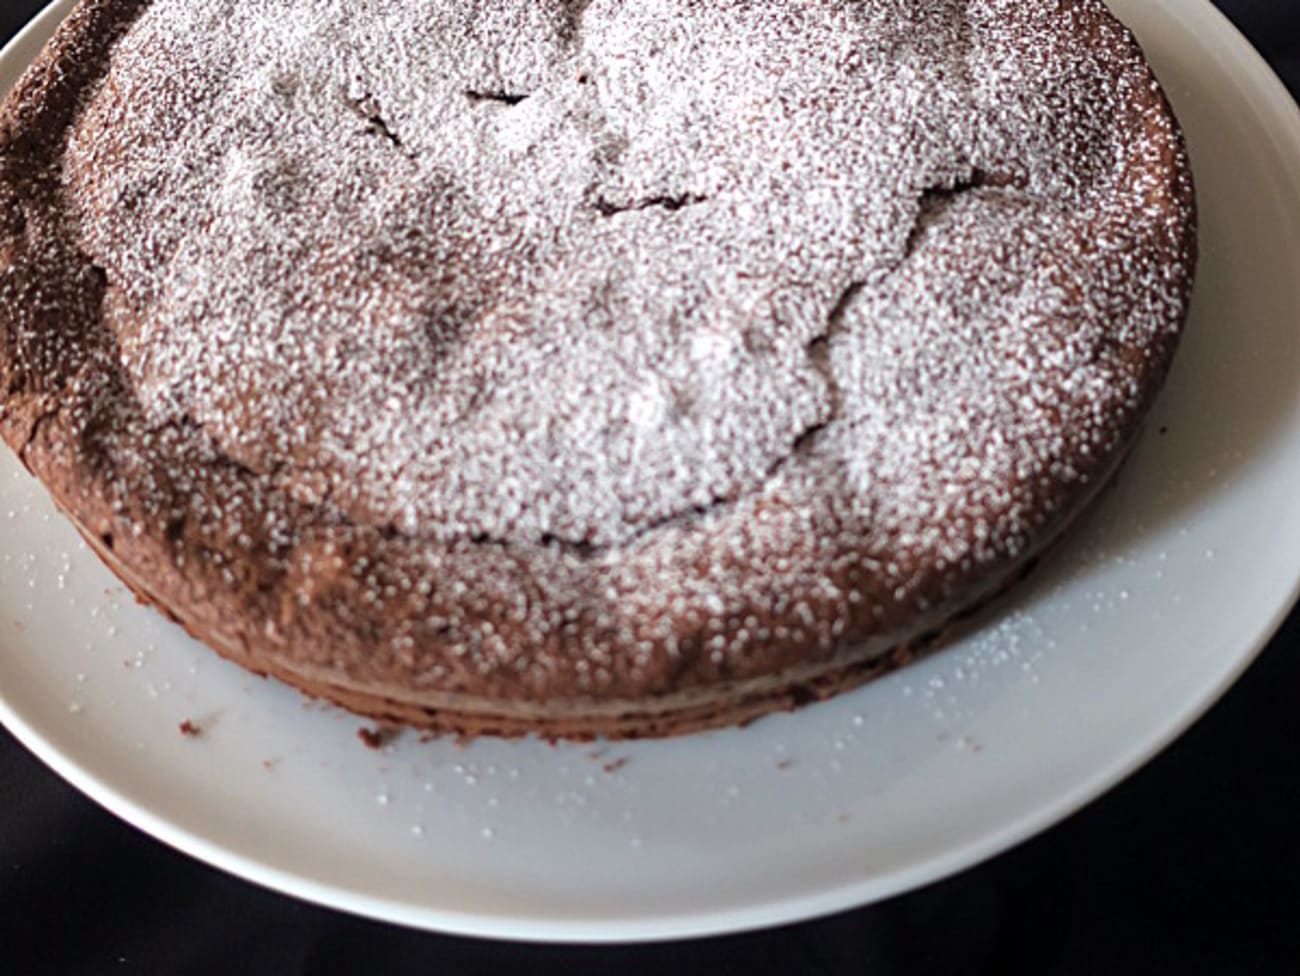 Gâteau au chocolat noir et purée d'amande Artimage_830202_7603962_201802270320631